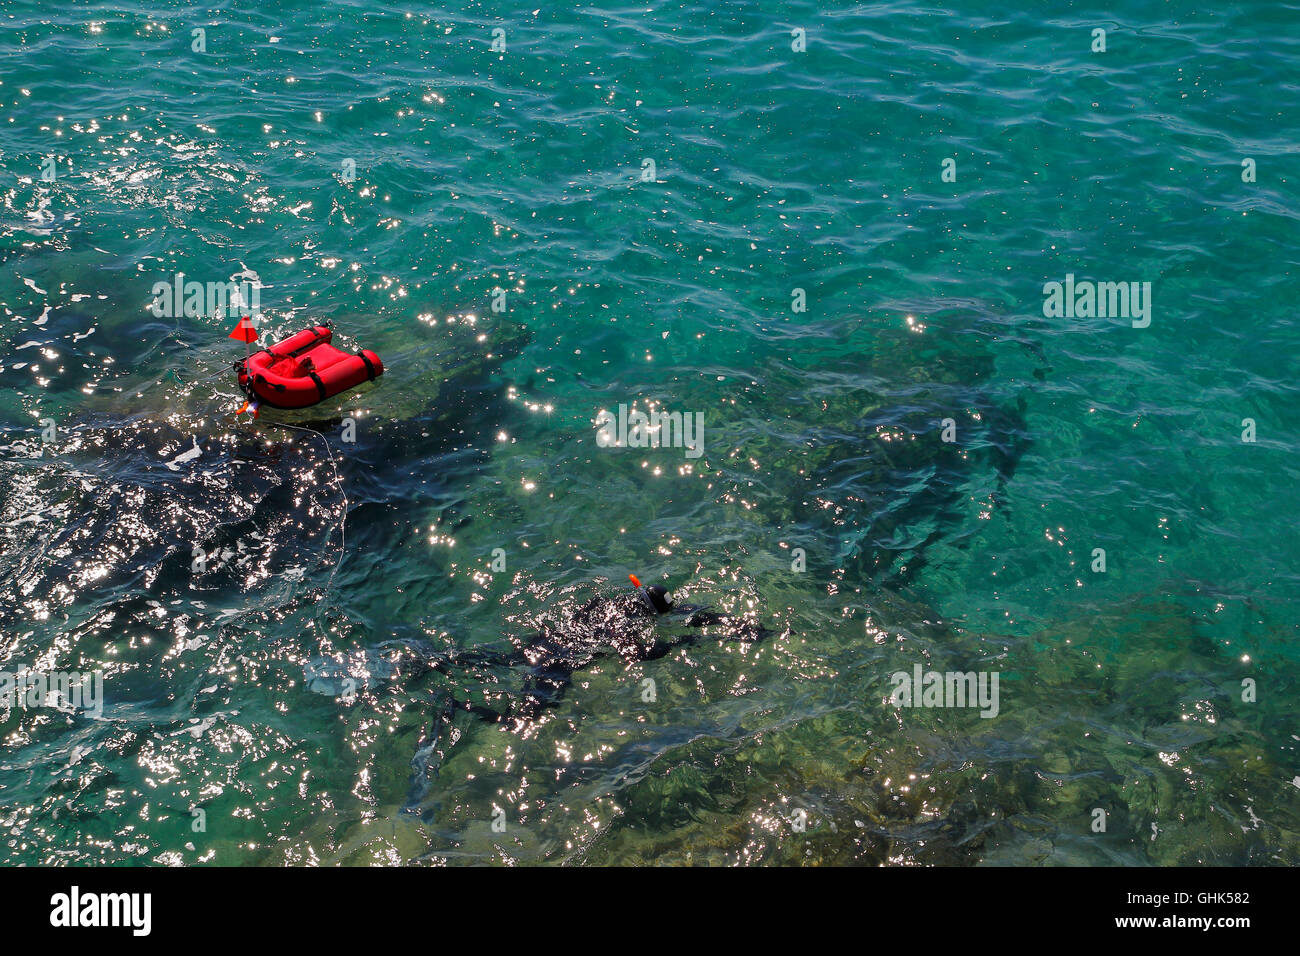 Taucher im Meer, mit roten Schwimmer Stockfoto